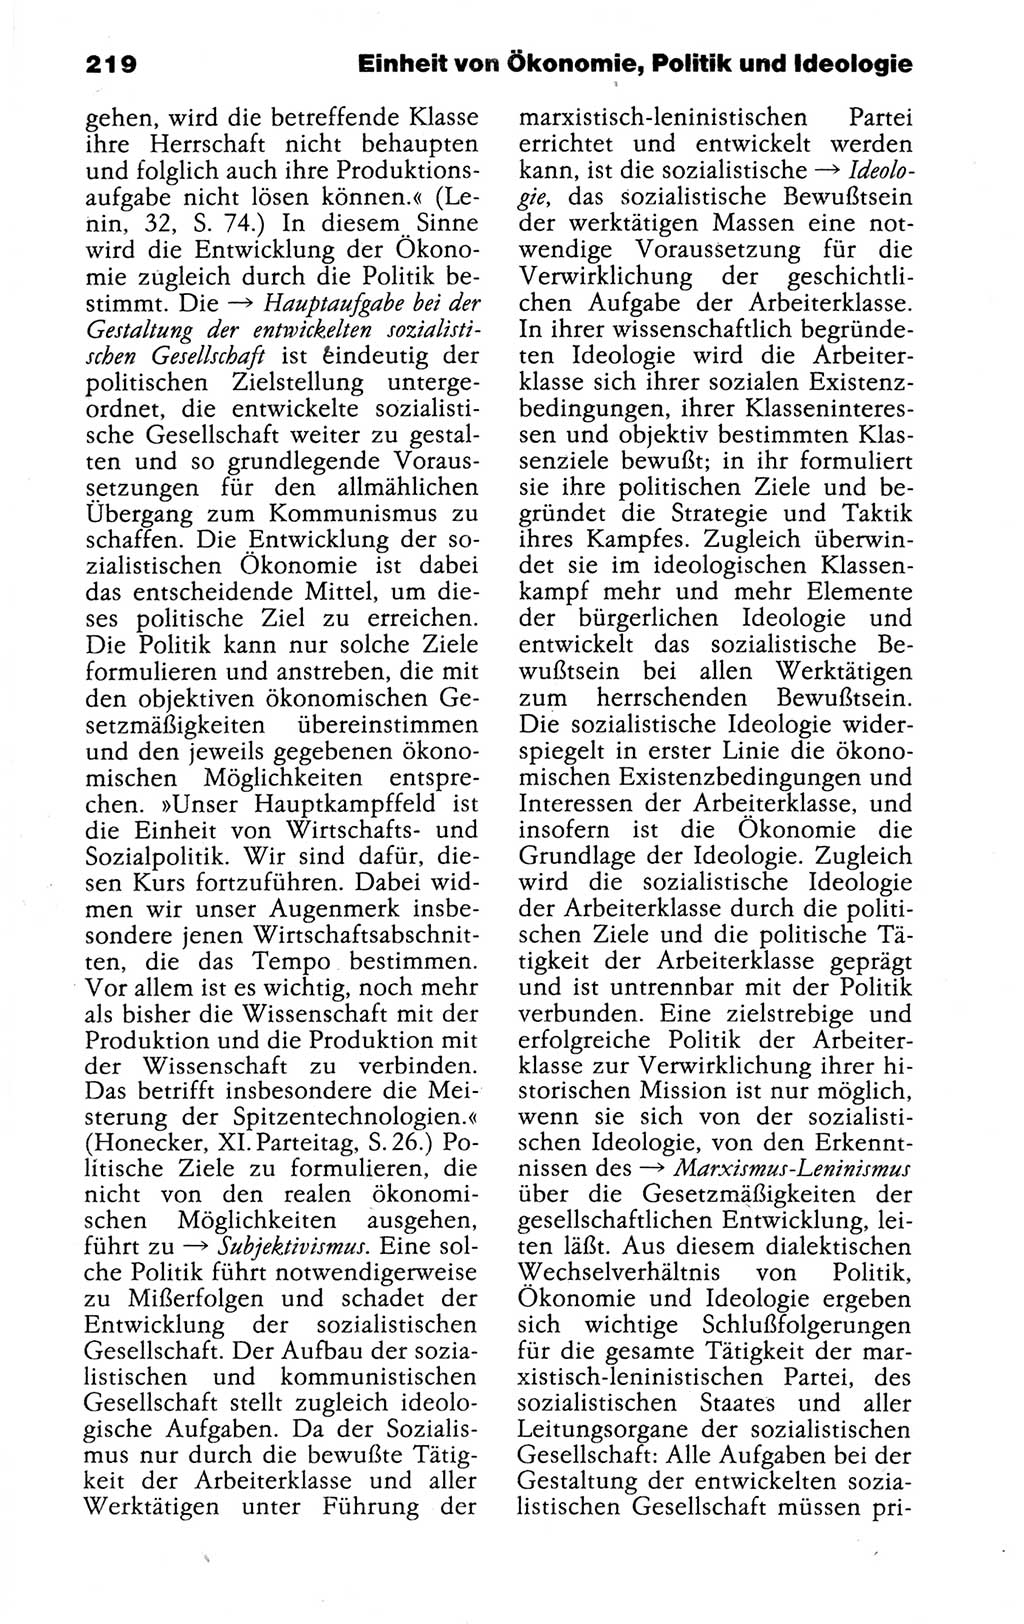 Kleines politisches Wörterbuch [Deutsche Demokratische Republik (DDR)] 1988, Seite 219 (Kl. pol. Wb. DDR 1988, S. 219)